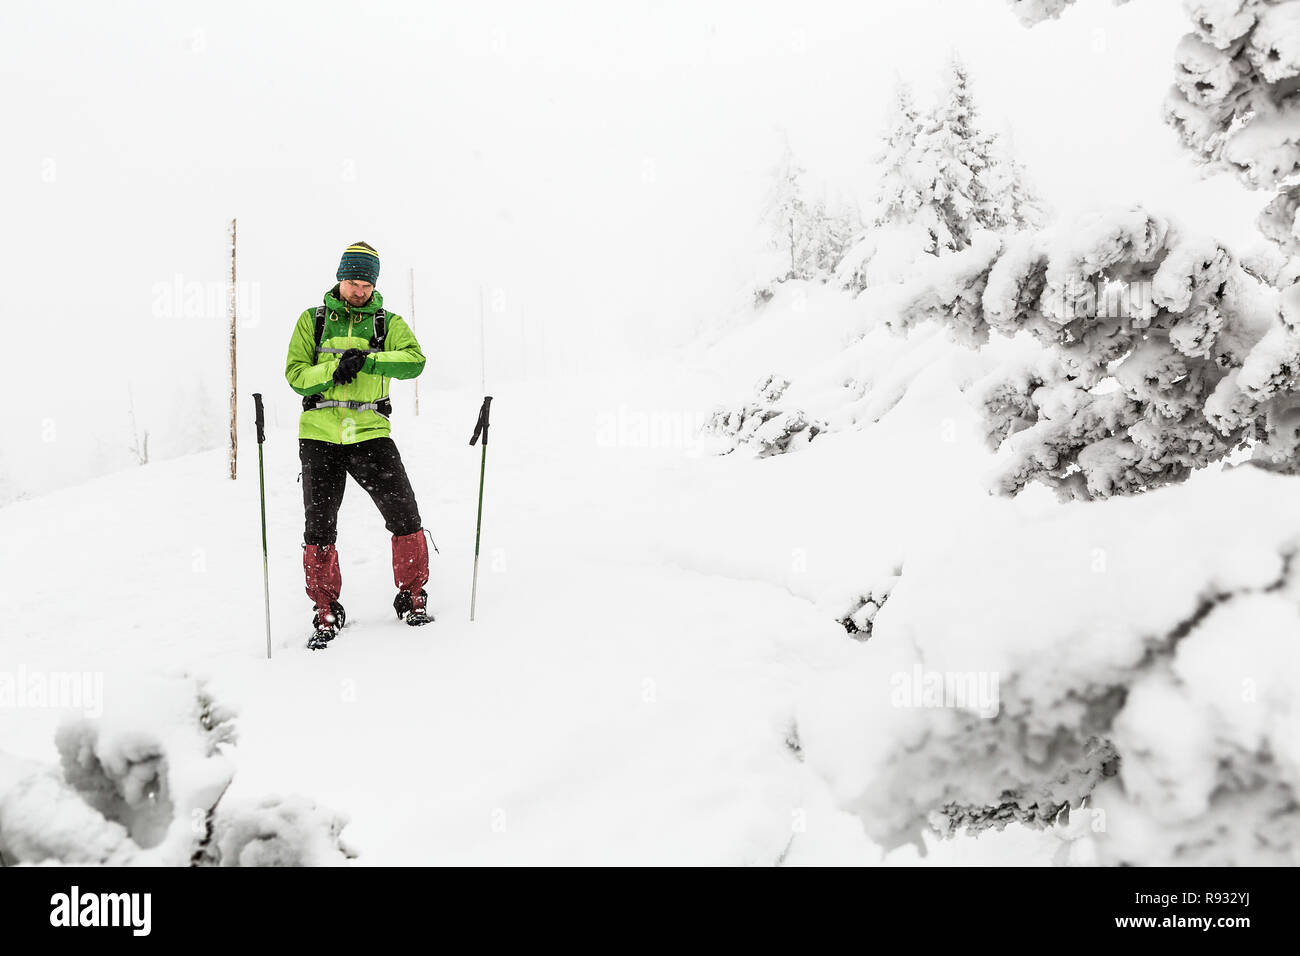 Mann verlor im Winter trekking Expedition in weiss verschneiten Berge mit Schnee Blizzard. Mit Hilfe von GPS-smart Watch eine Möglichkeit, Abenteuer und Expedition Konz zu finden Stockfoto